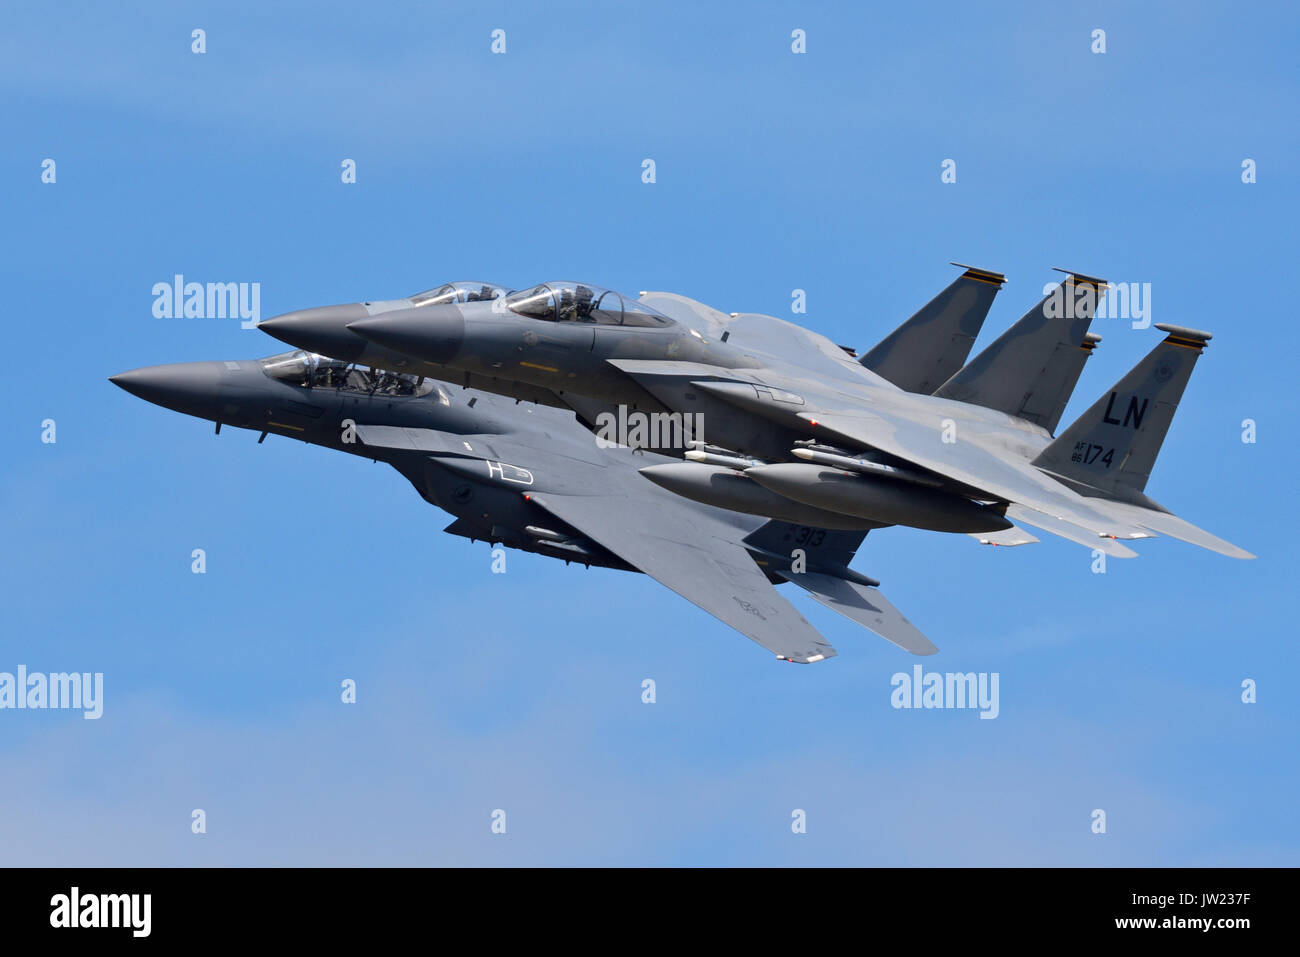 Drei F-15-Kampfflugzeuge der US Air Force von RAF Lakenheath, zwei F-15C-Kampfflugzeuge und ein F-15E Strike Eagle-Mehrzweckjäger Stockfoto